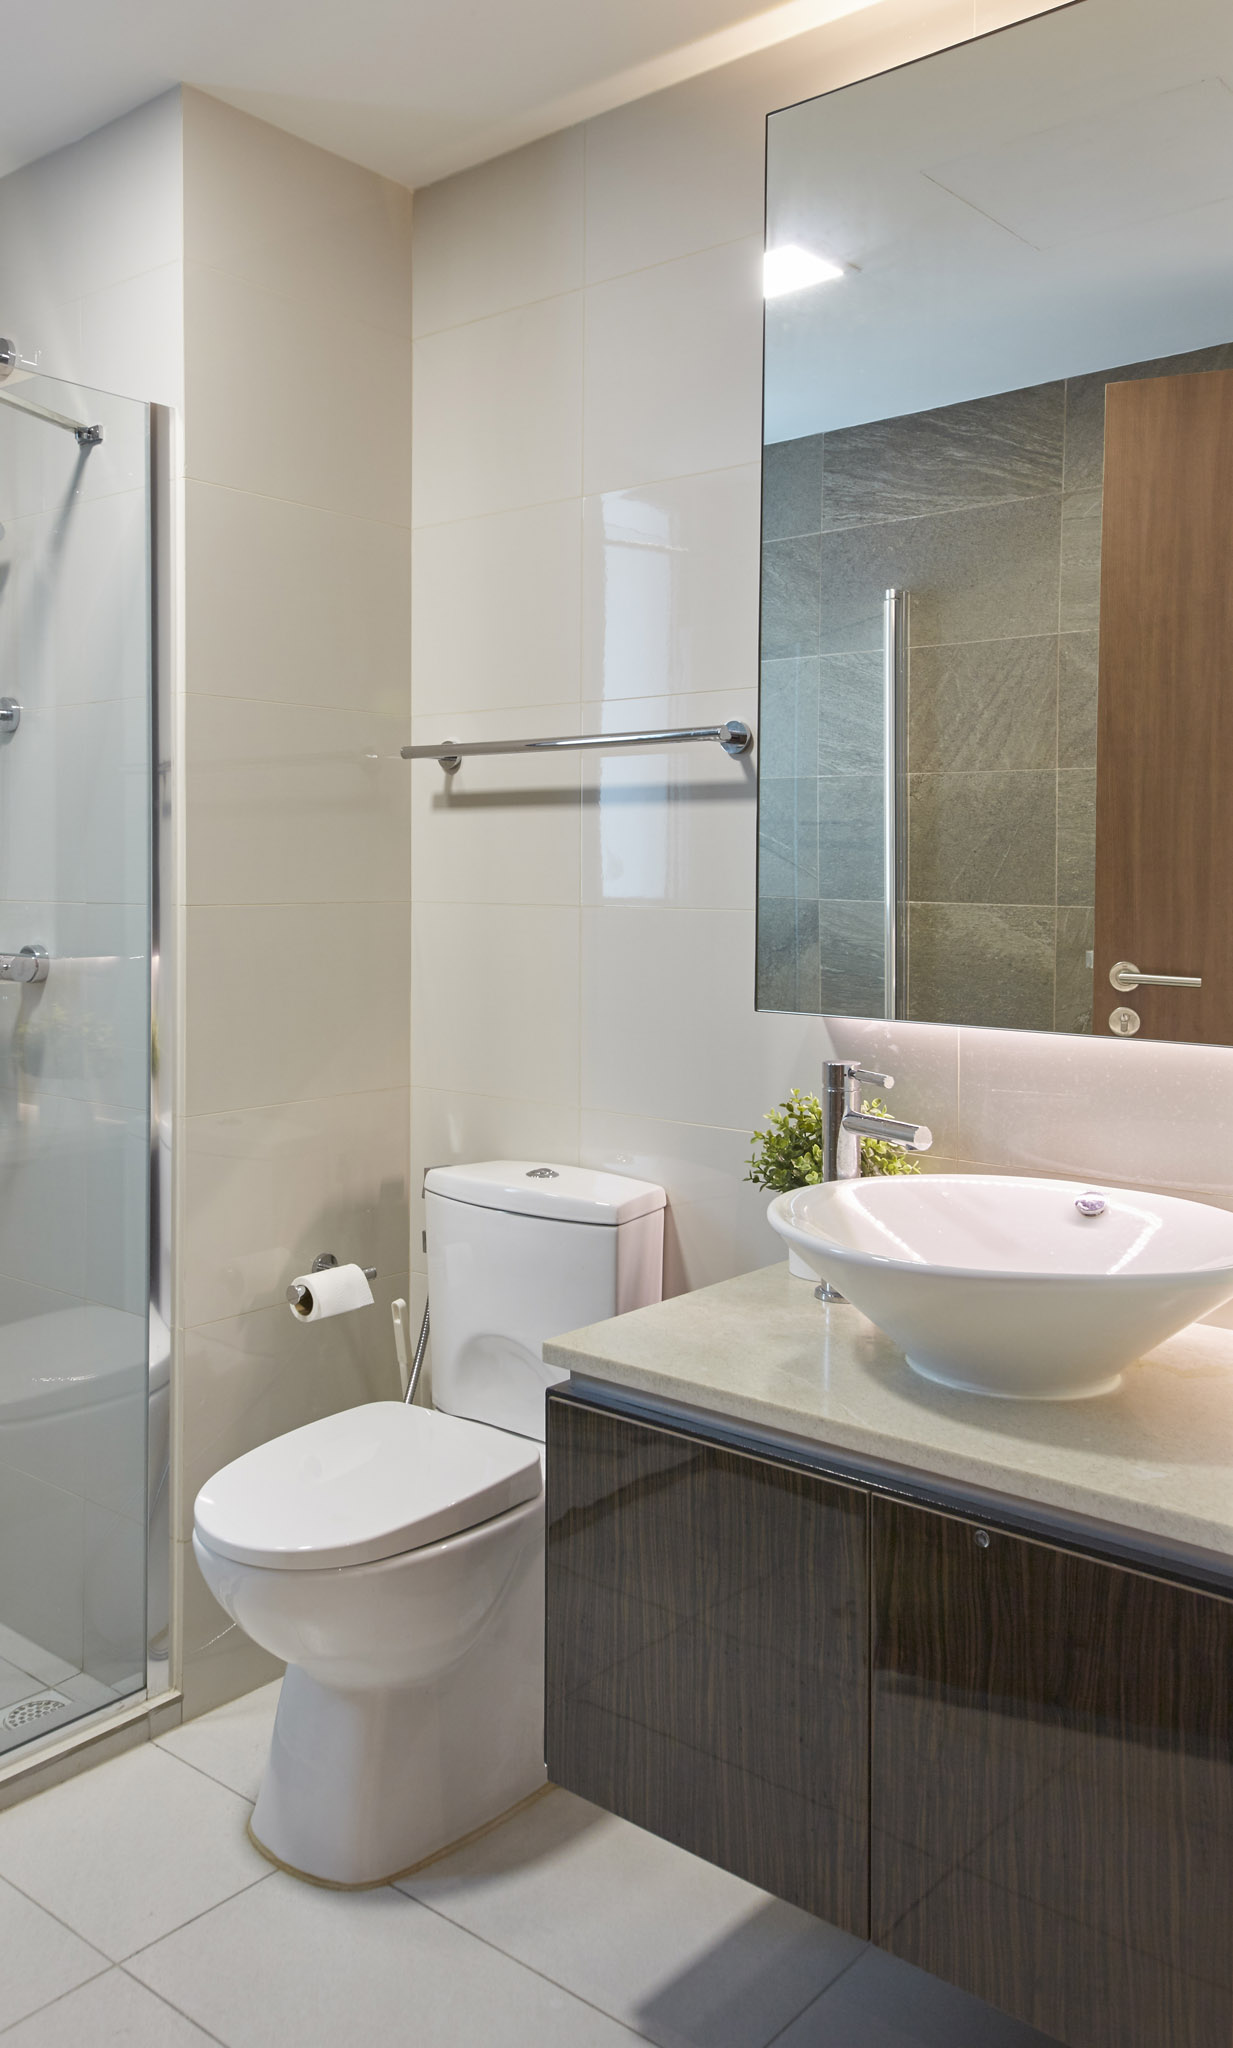 Eclectic, Minimalist, Scandinavian Design - Bathroom - Condominium - Design by Carpenters 匠